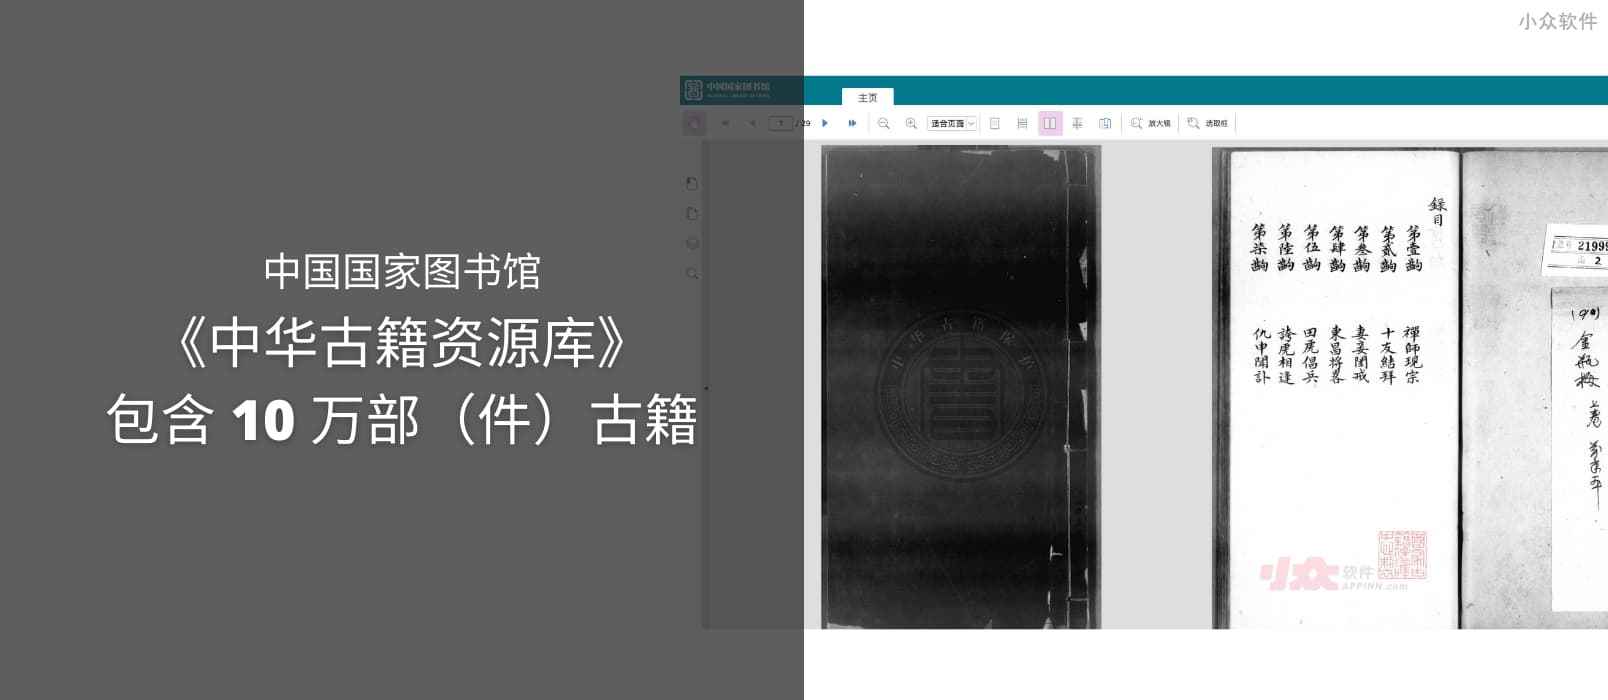 中国国家图书馆发布《中华古籍资源库》可免登录浏览，包含 10 万部（件）古籍